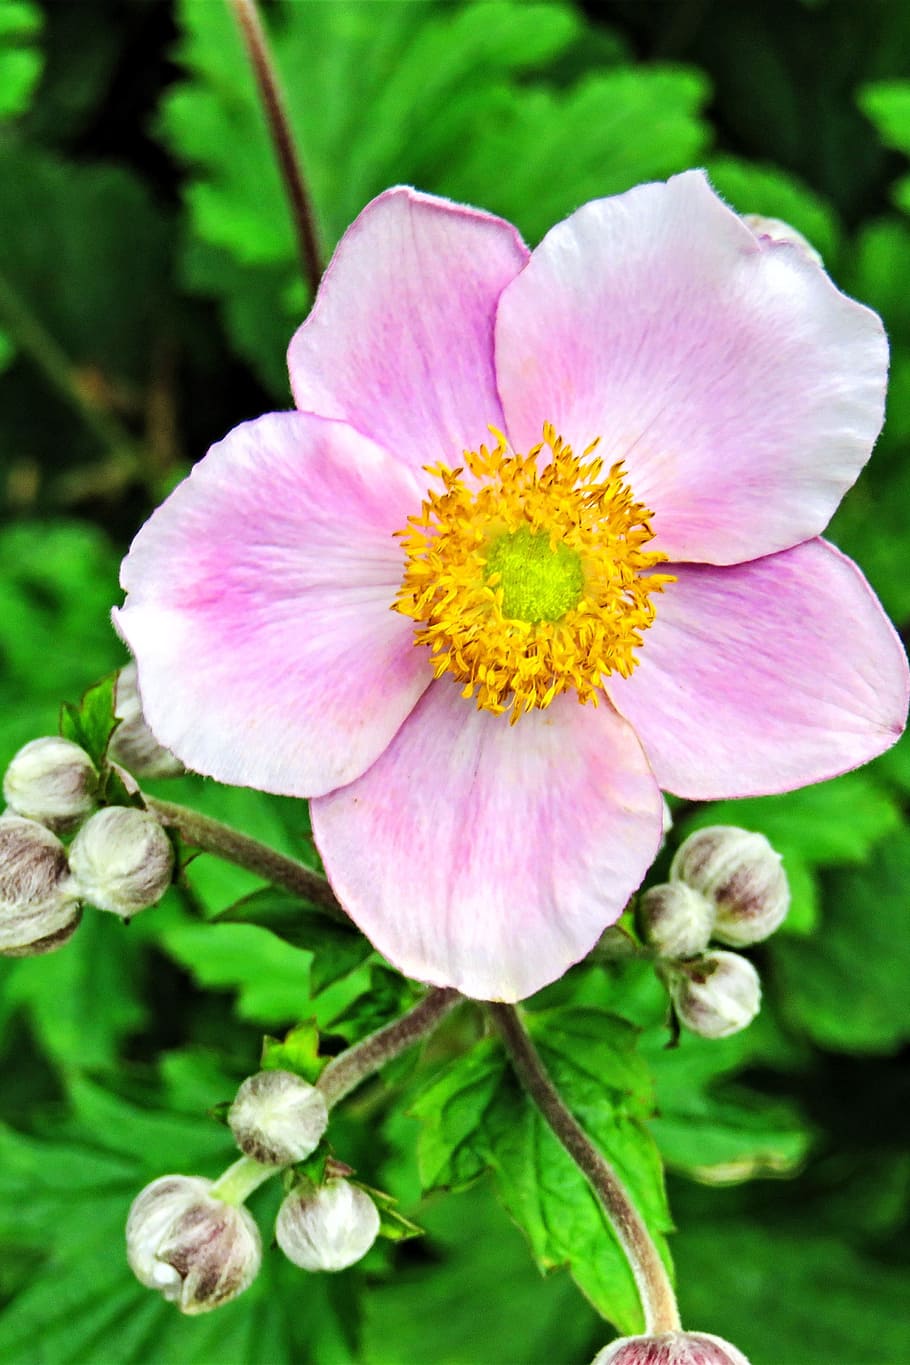 植物 秋のアネモネ 日本のアネモネ 花 芽 ピンクの花びら 黄色の花粉管 庭 晩夏 自然 Pxfuel